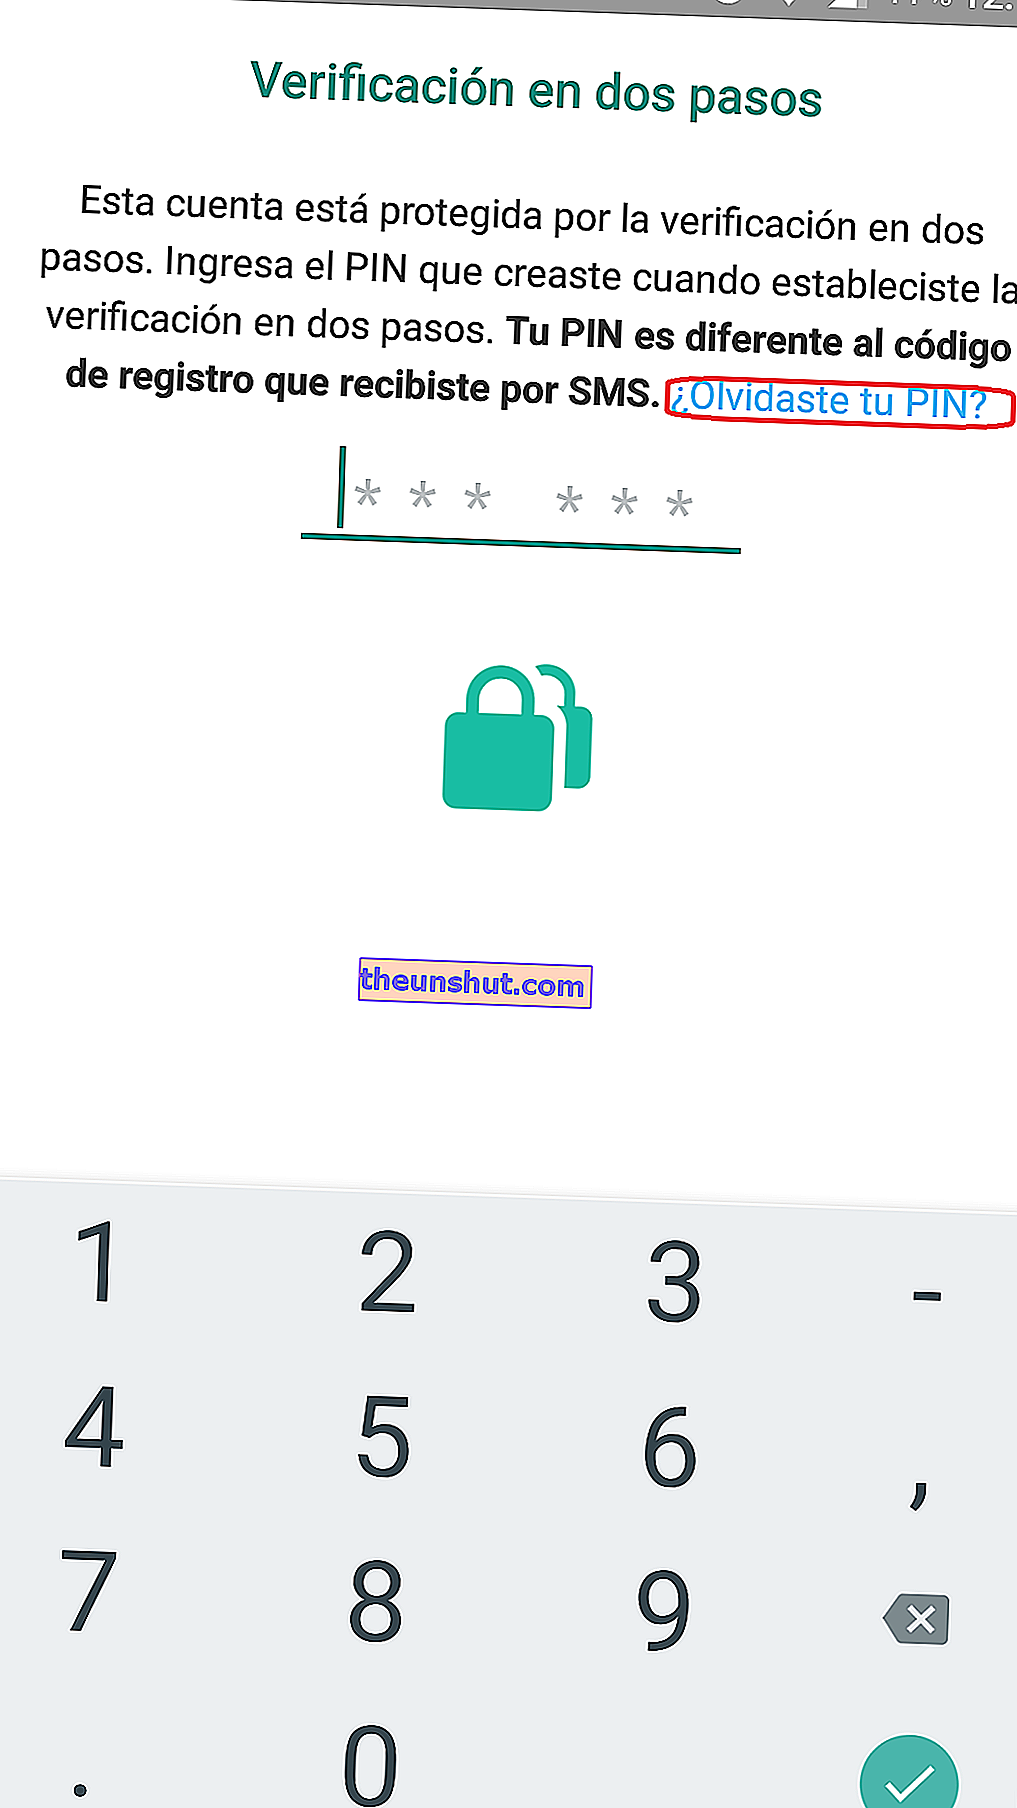 Hogyan lehet elérni a WhatsApp alkalmazást, ha elfelejtette a PIN 2 jelszavát